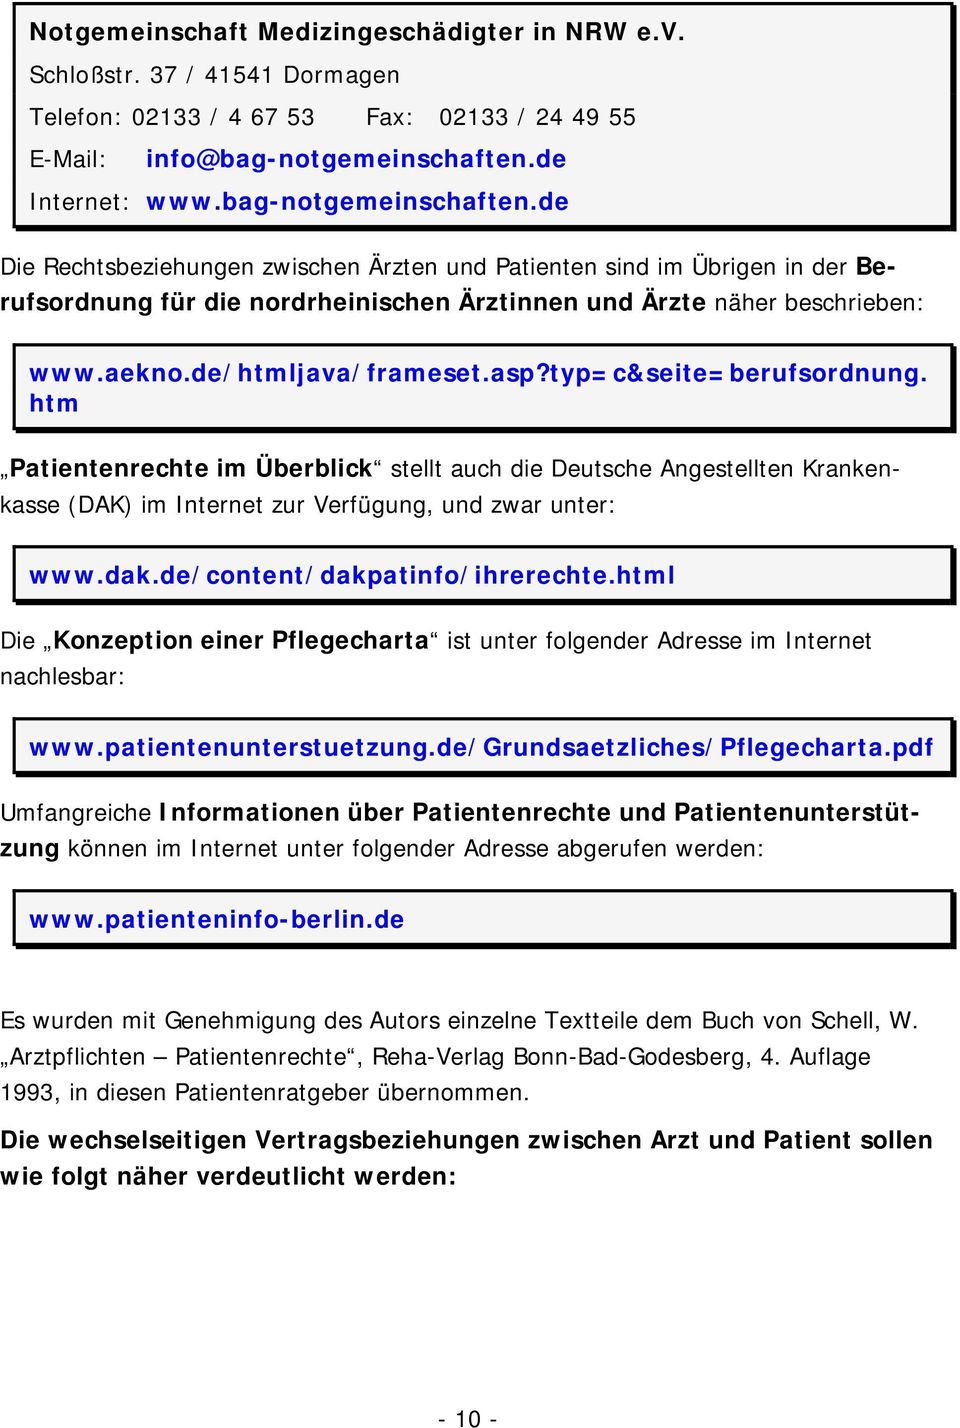 aekno.de/htmljava/frameset.asp?typ=c&seite=berufsordnung. htm Patientenrechte im Überblick stellt auch die Deutsche Angestellten Krankenkasse (DAK) im Internet zur Verfügung, und zwar unter: www.dak.